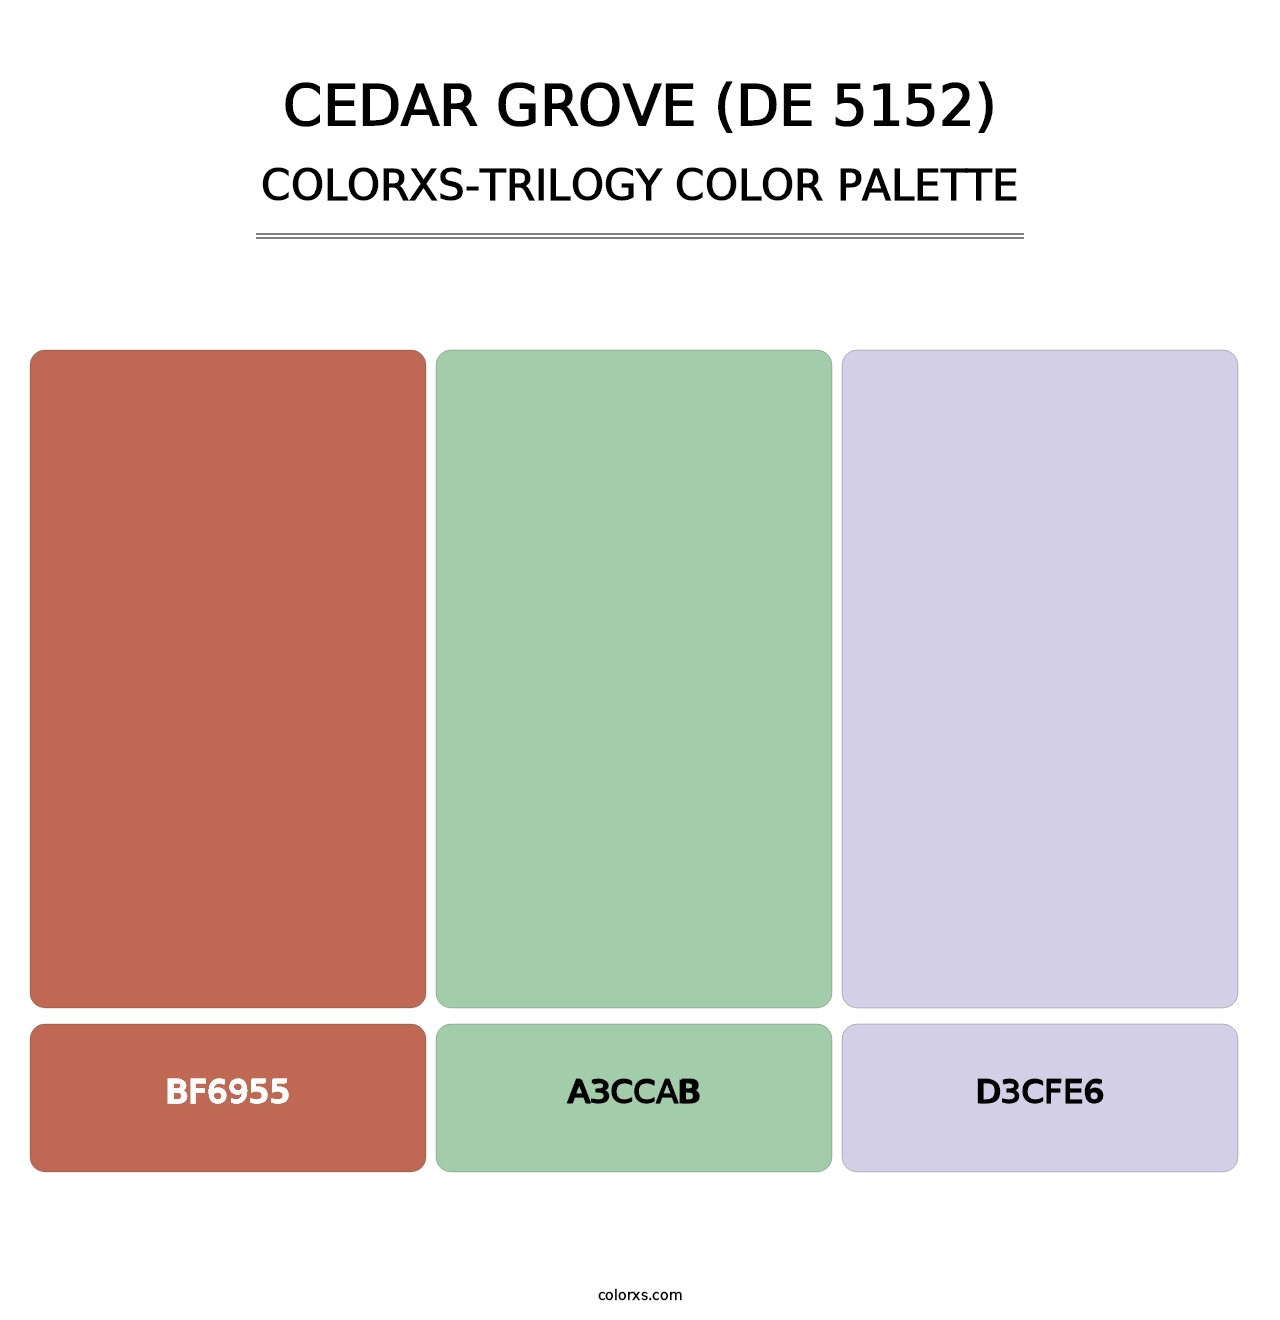 Cedar Grove (DE 5152) - Colorxs Trilogy Palette